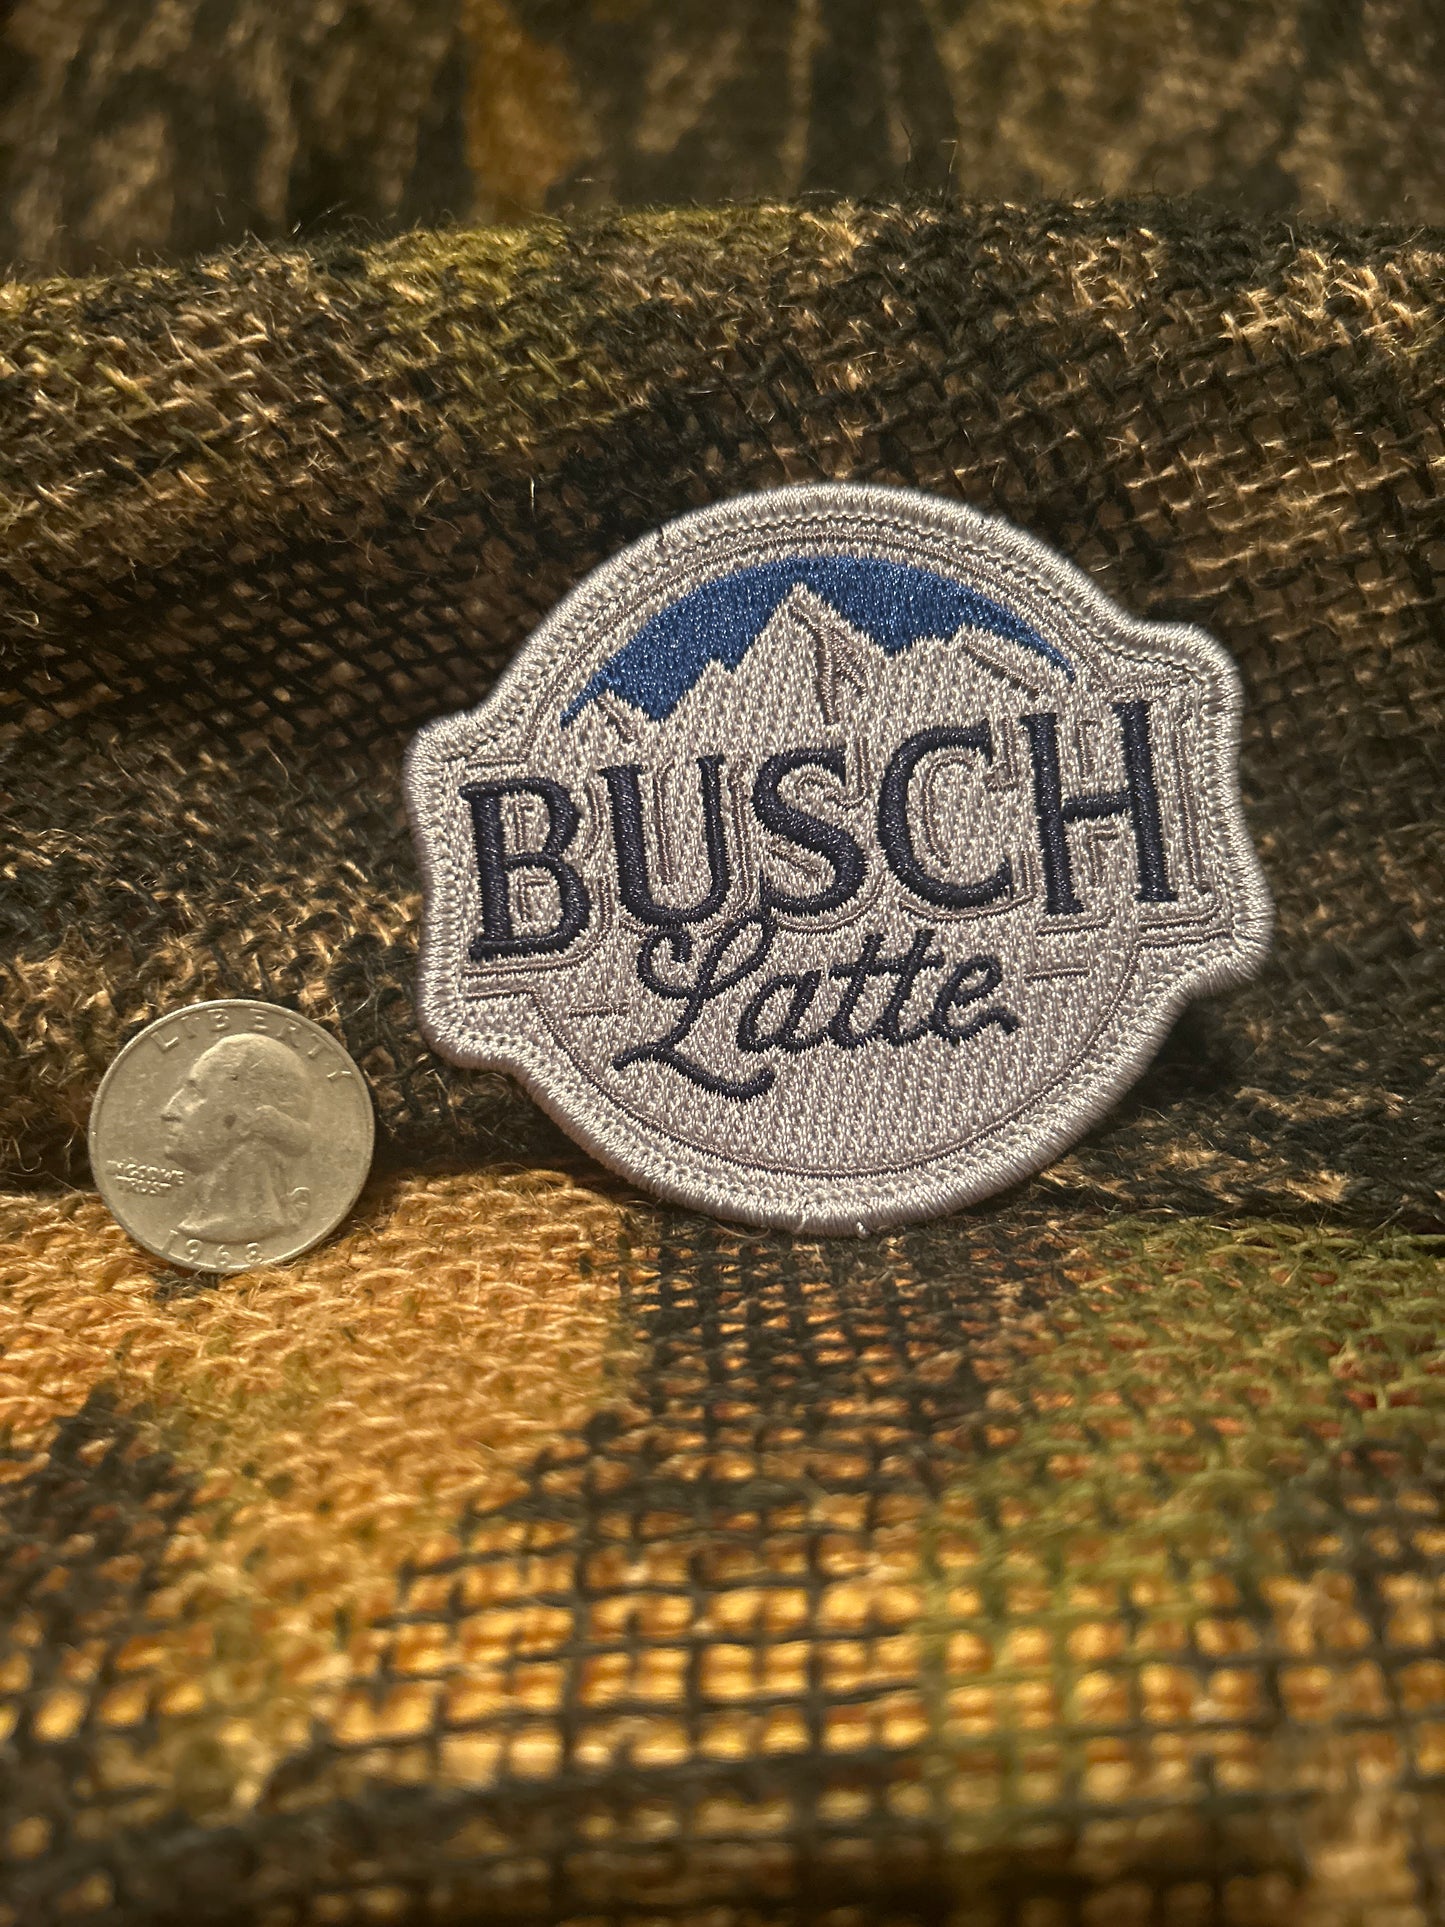 Busch Latte patch